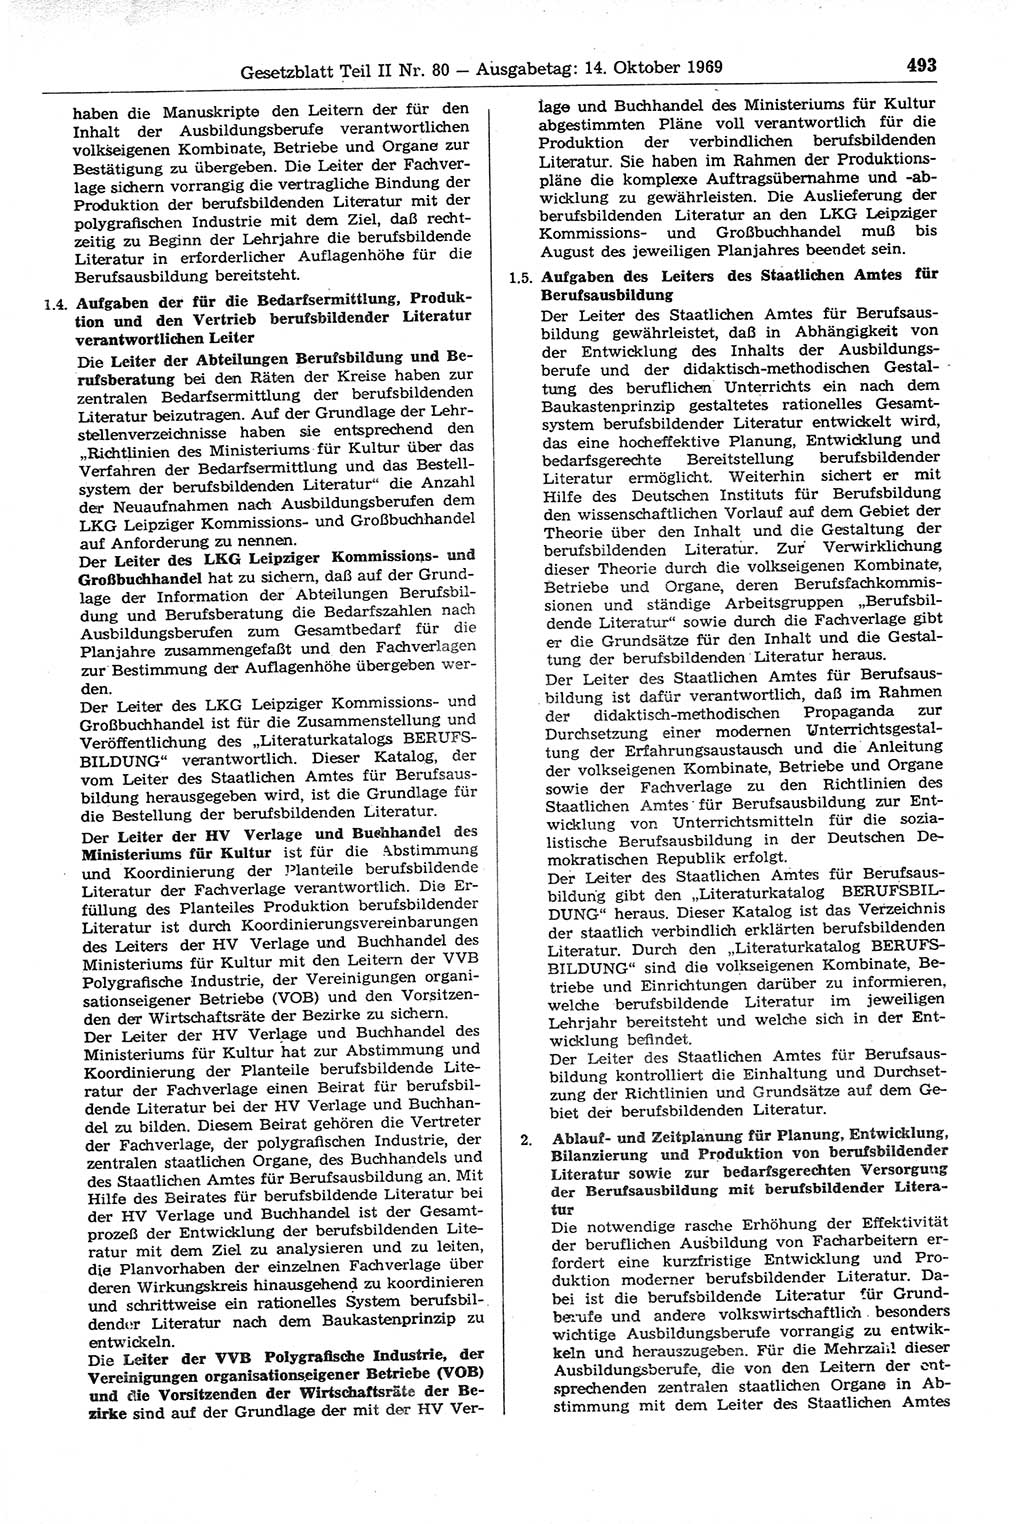 Gesetzblatt (GBl.) der Deutschen Demokratischen Republik (DDR) Teil ⅠⅠ 1969, Seite 493 (GBl. DDR ⅠⅠ 1969, S. 493)